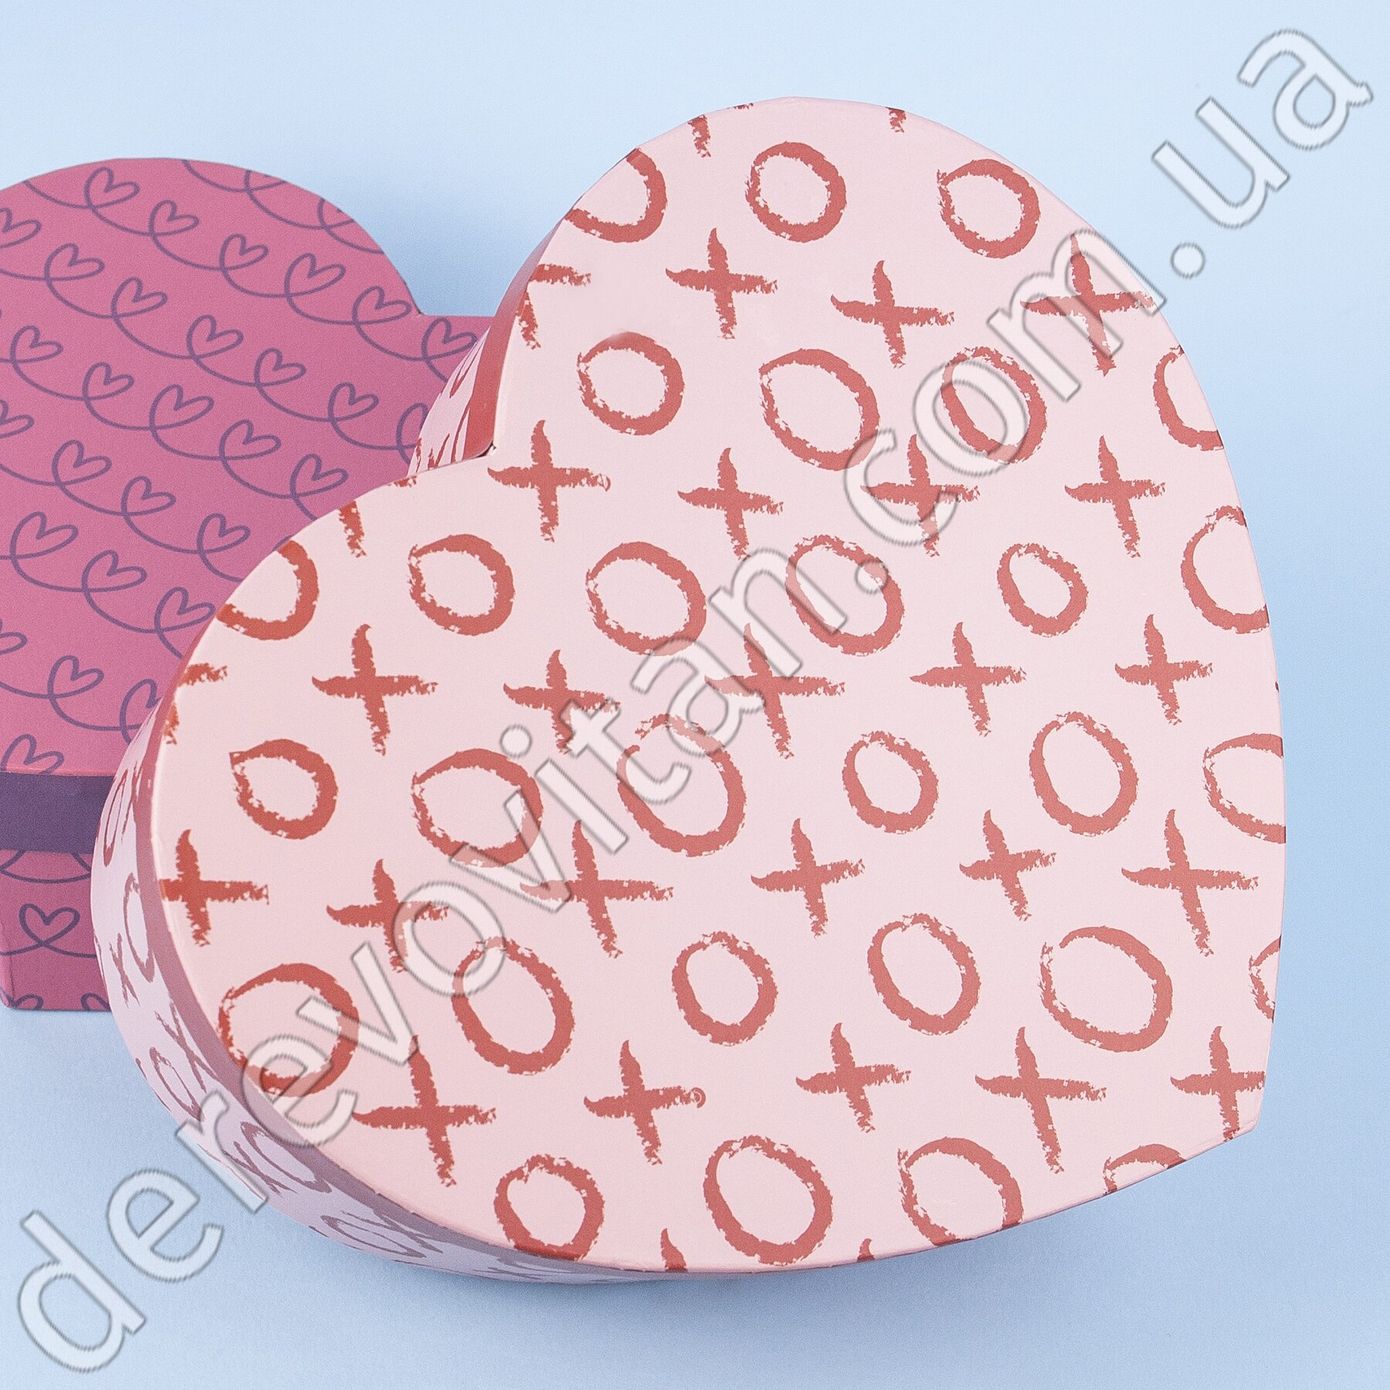 Подарочные коробки в форме сердца "Kiss" розовые, набор из 3 шт.